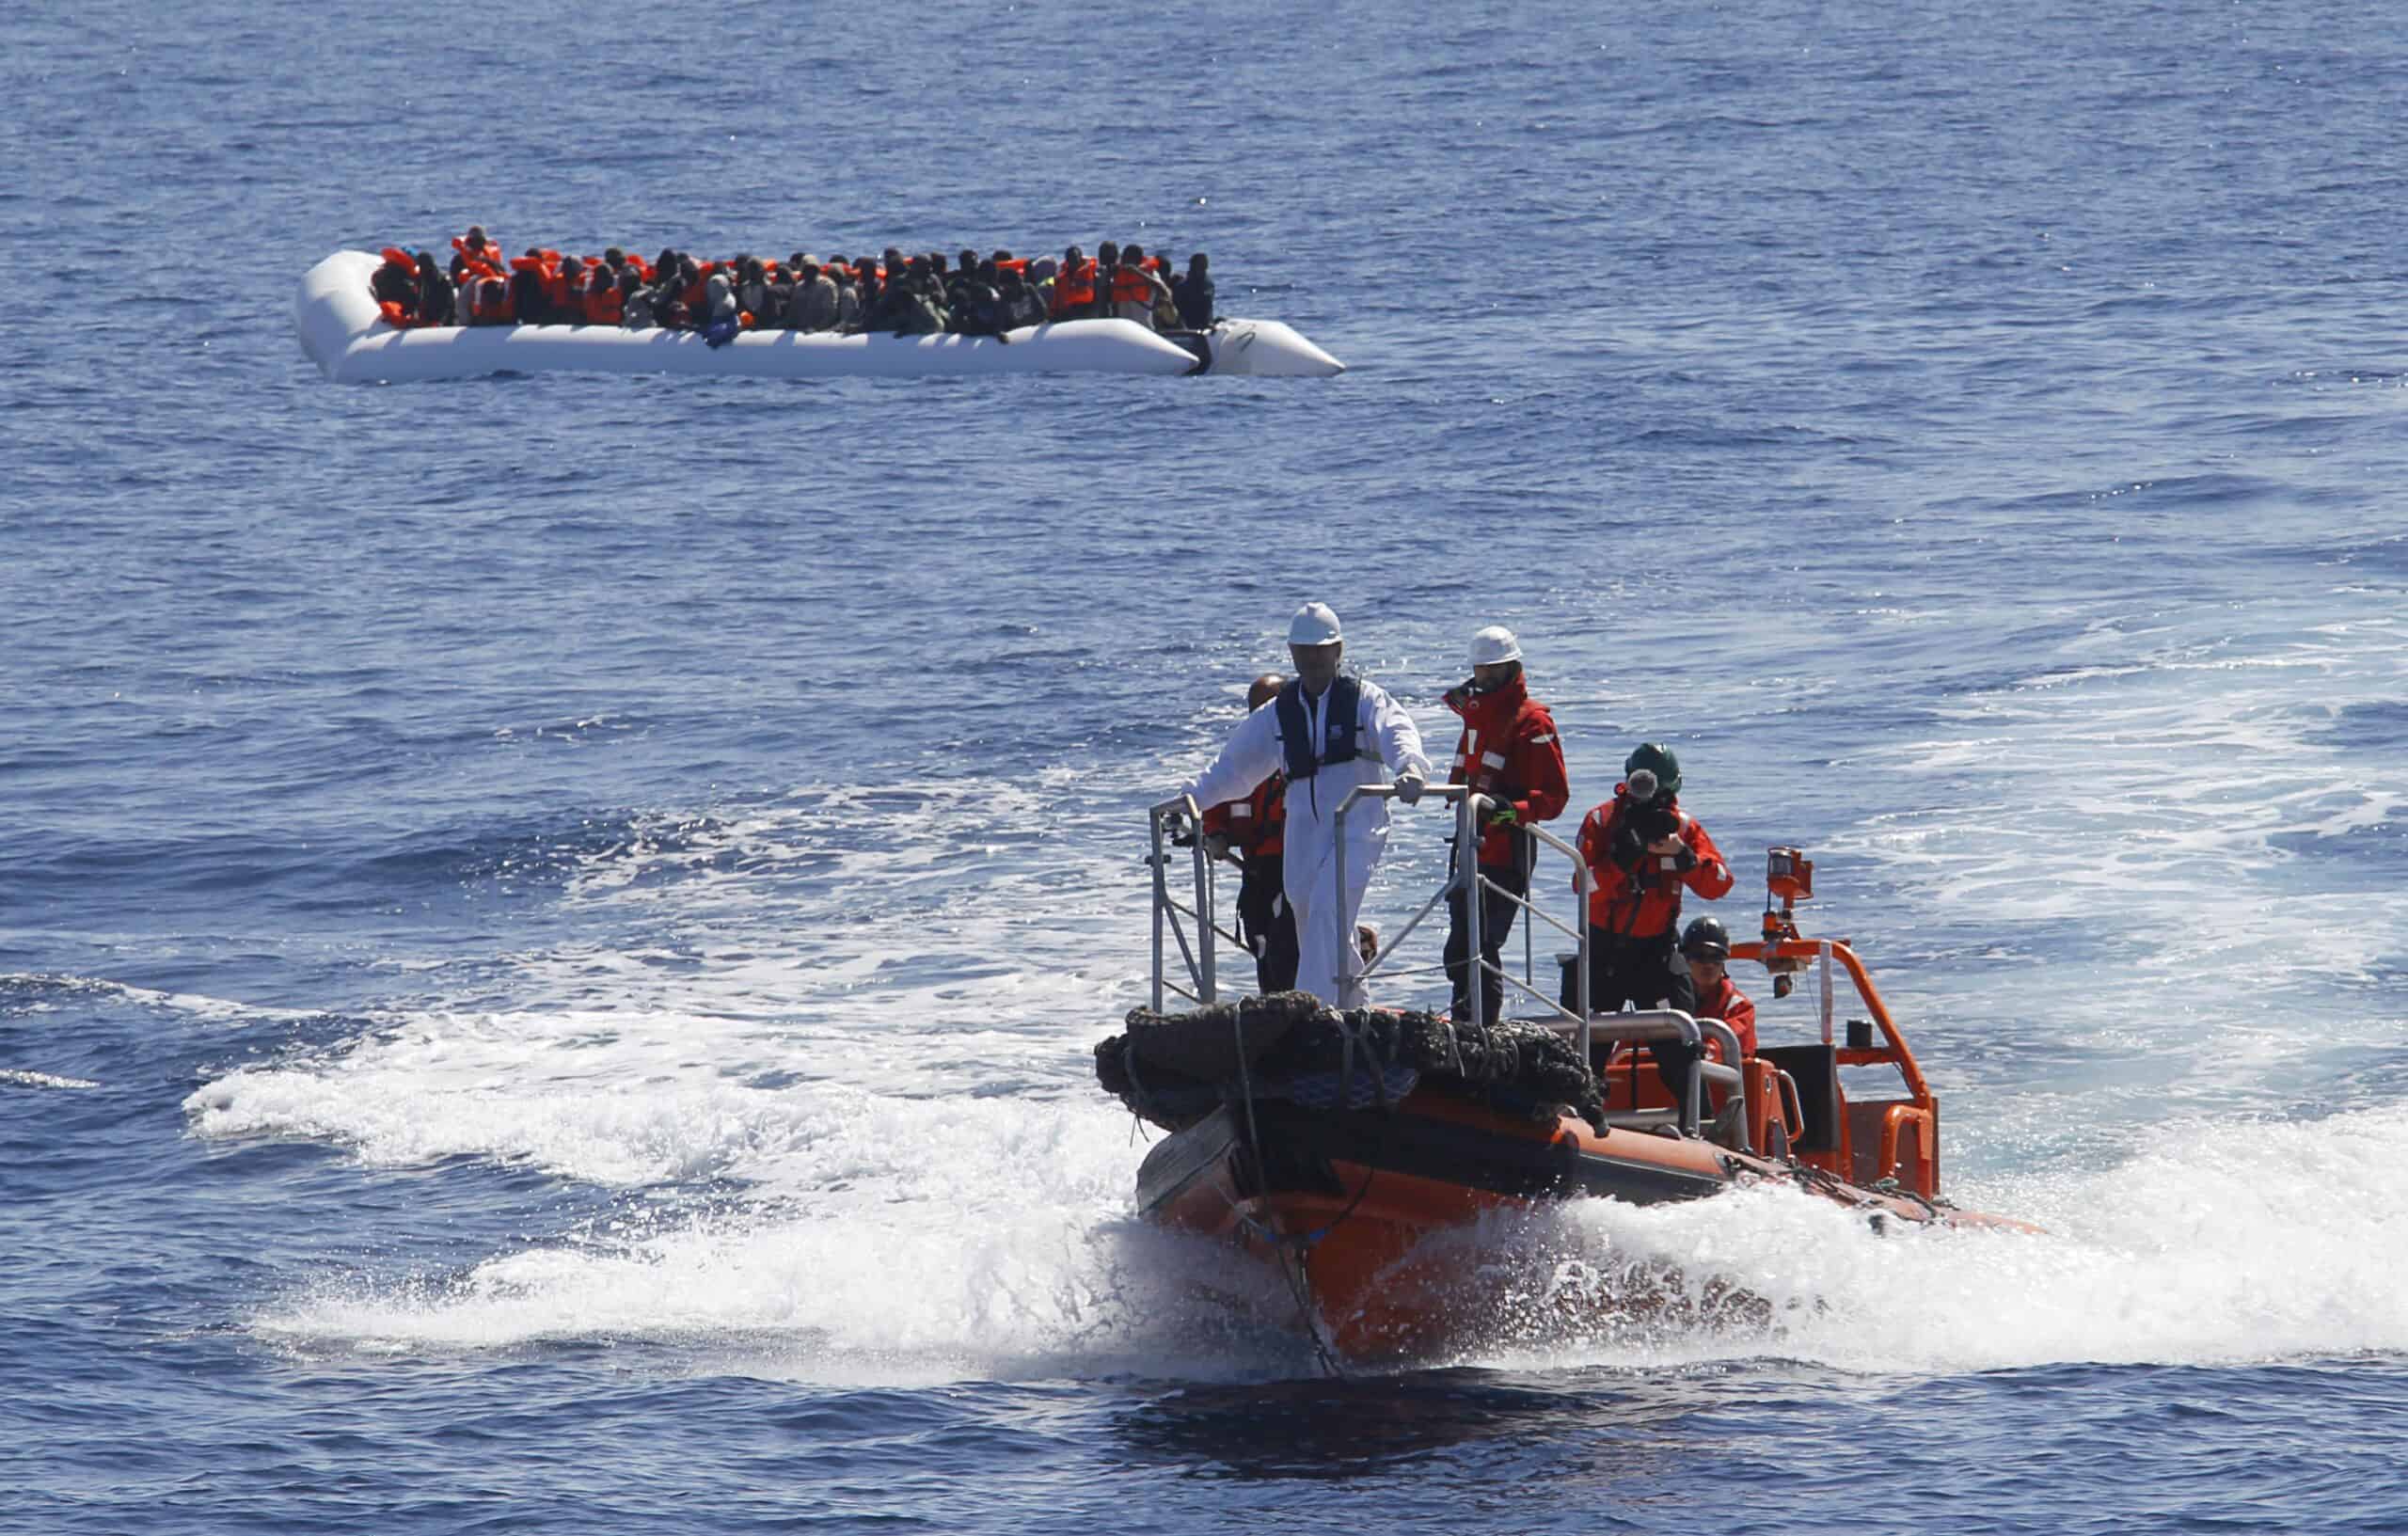 Sguardo sul Mediterraneo #44 – Centinaia di naufraghi salvati nel mese di gennaio